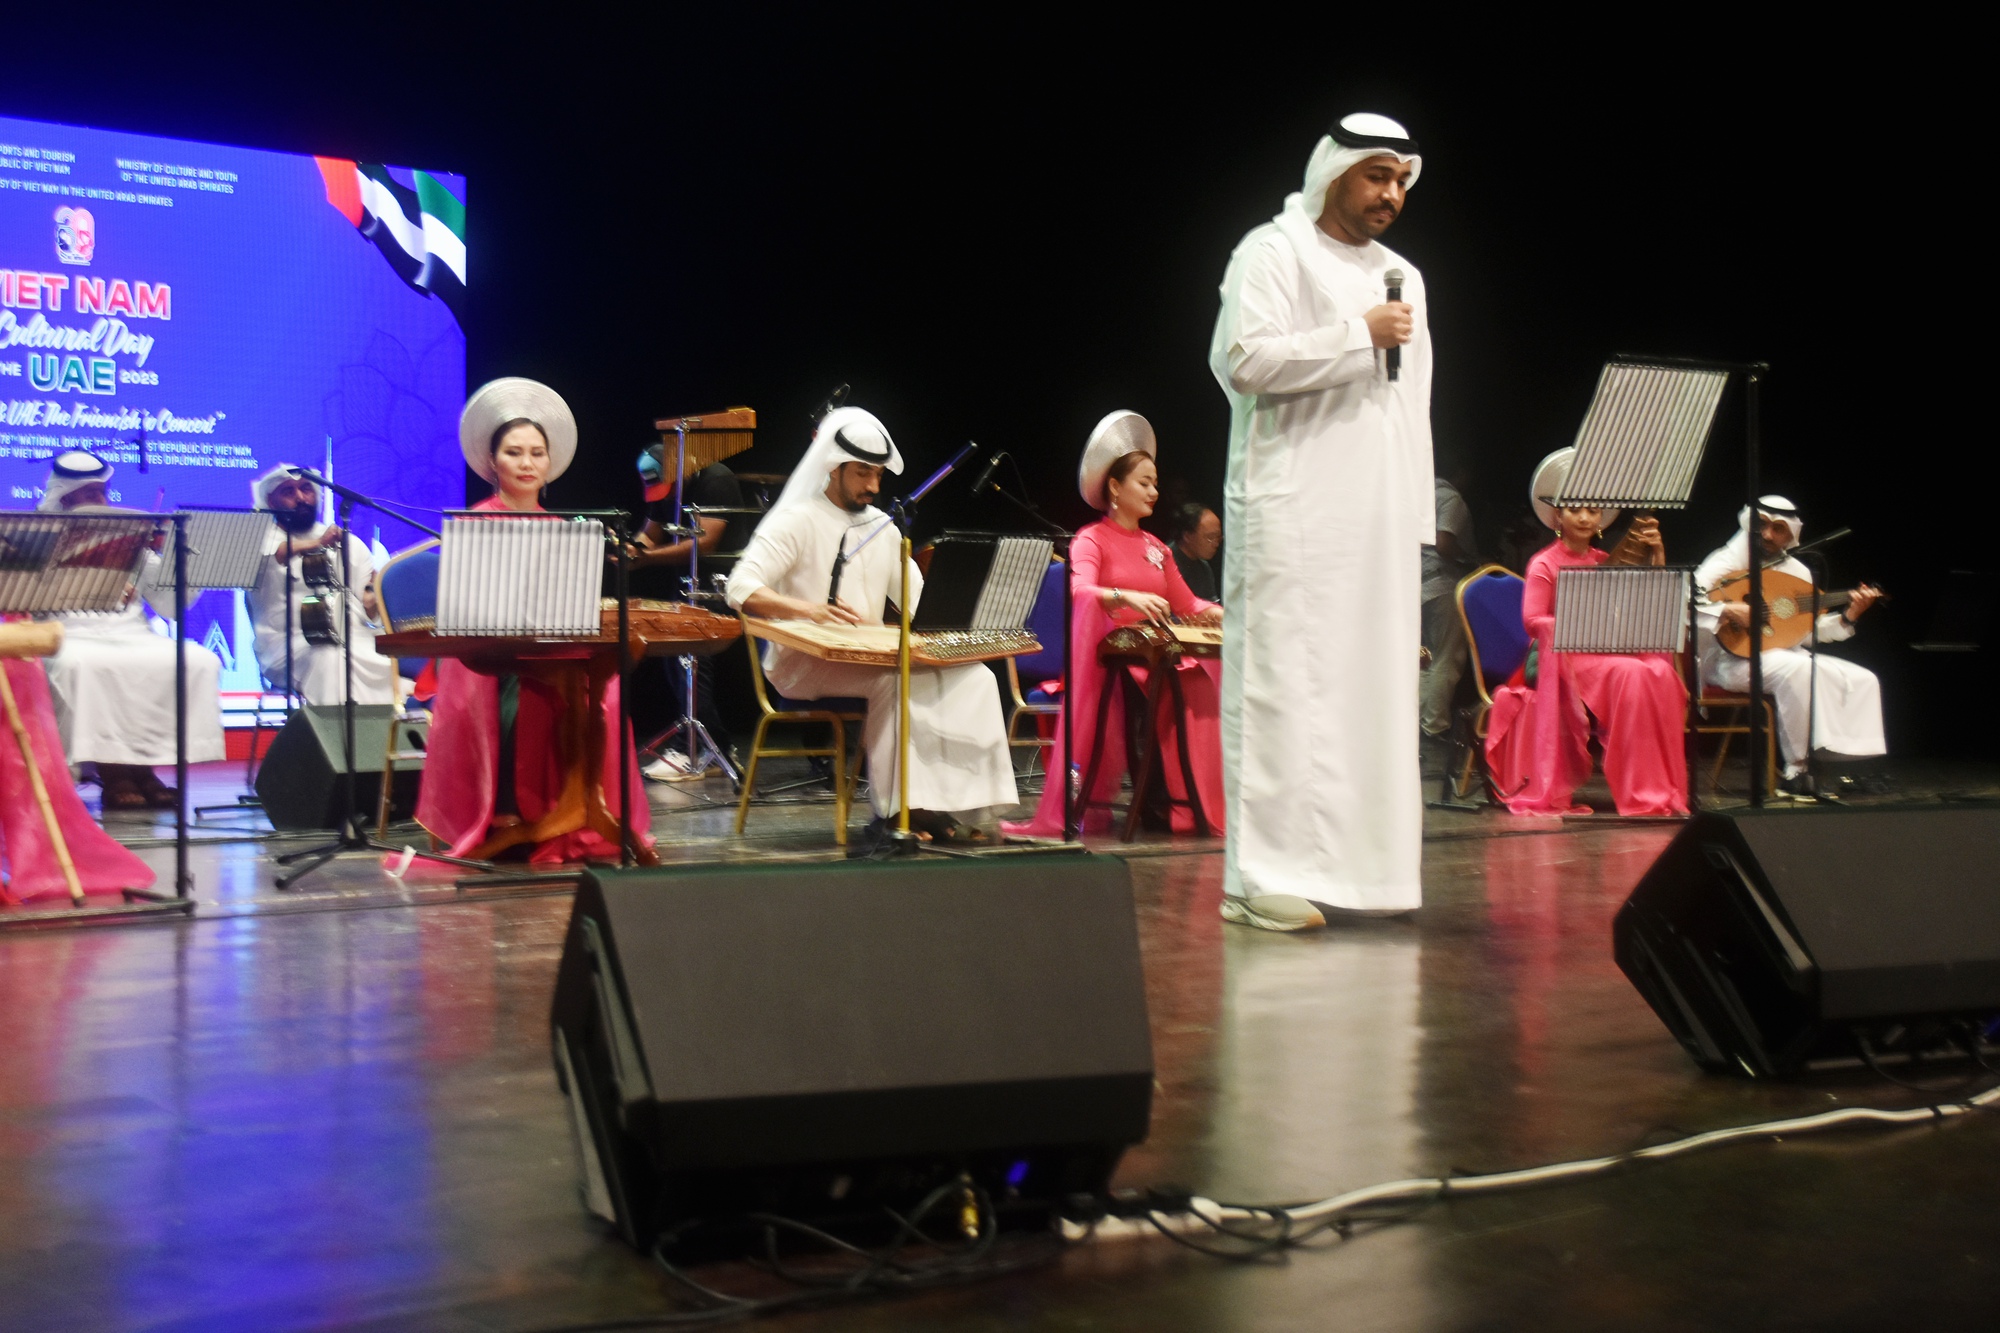 Đêm hội Việt Nam tại UAE - cầu nối tăng cường sự hiểu biết giữa hai quốc gia - Ảnh 1.